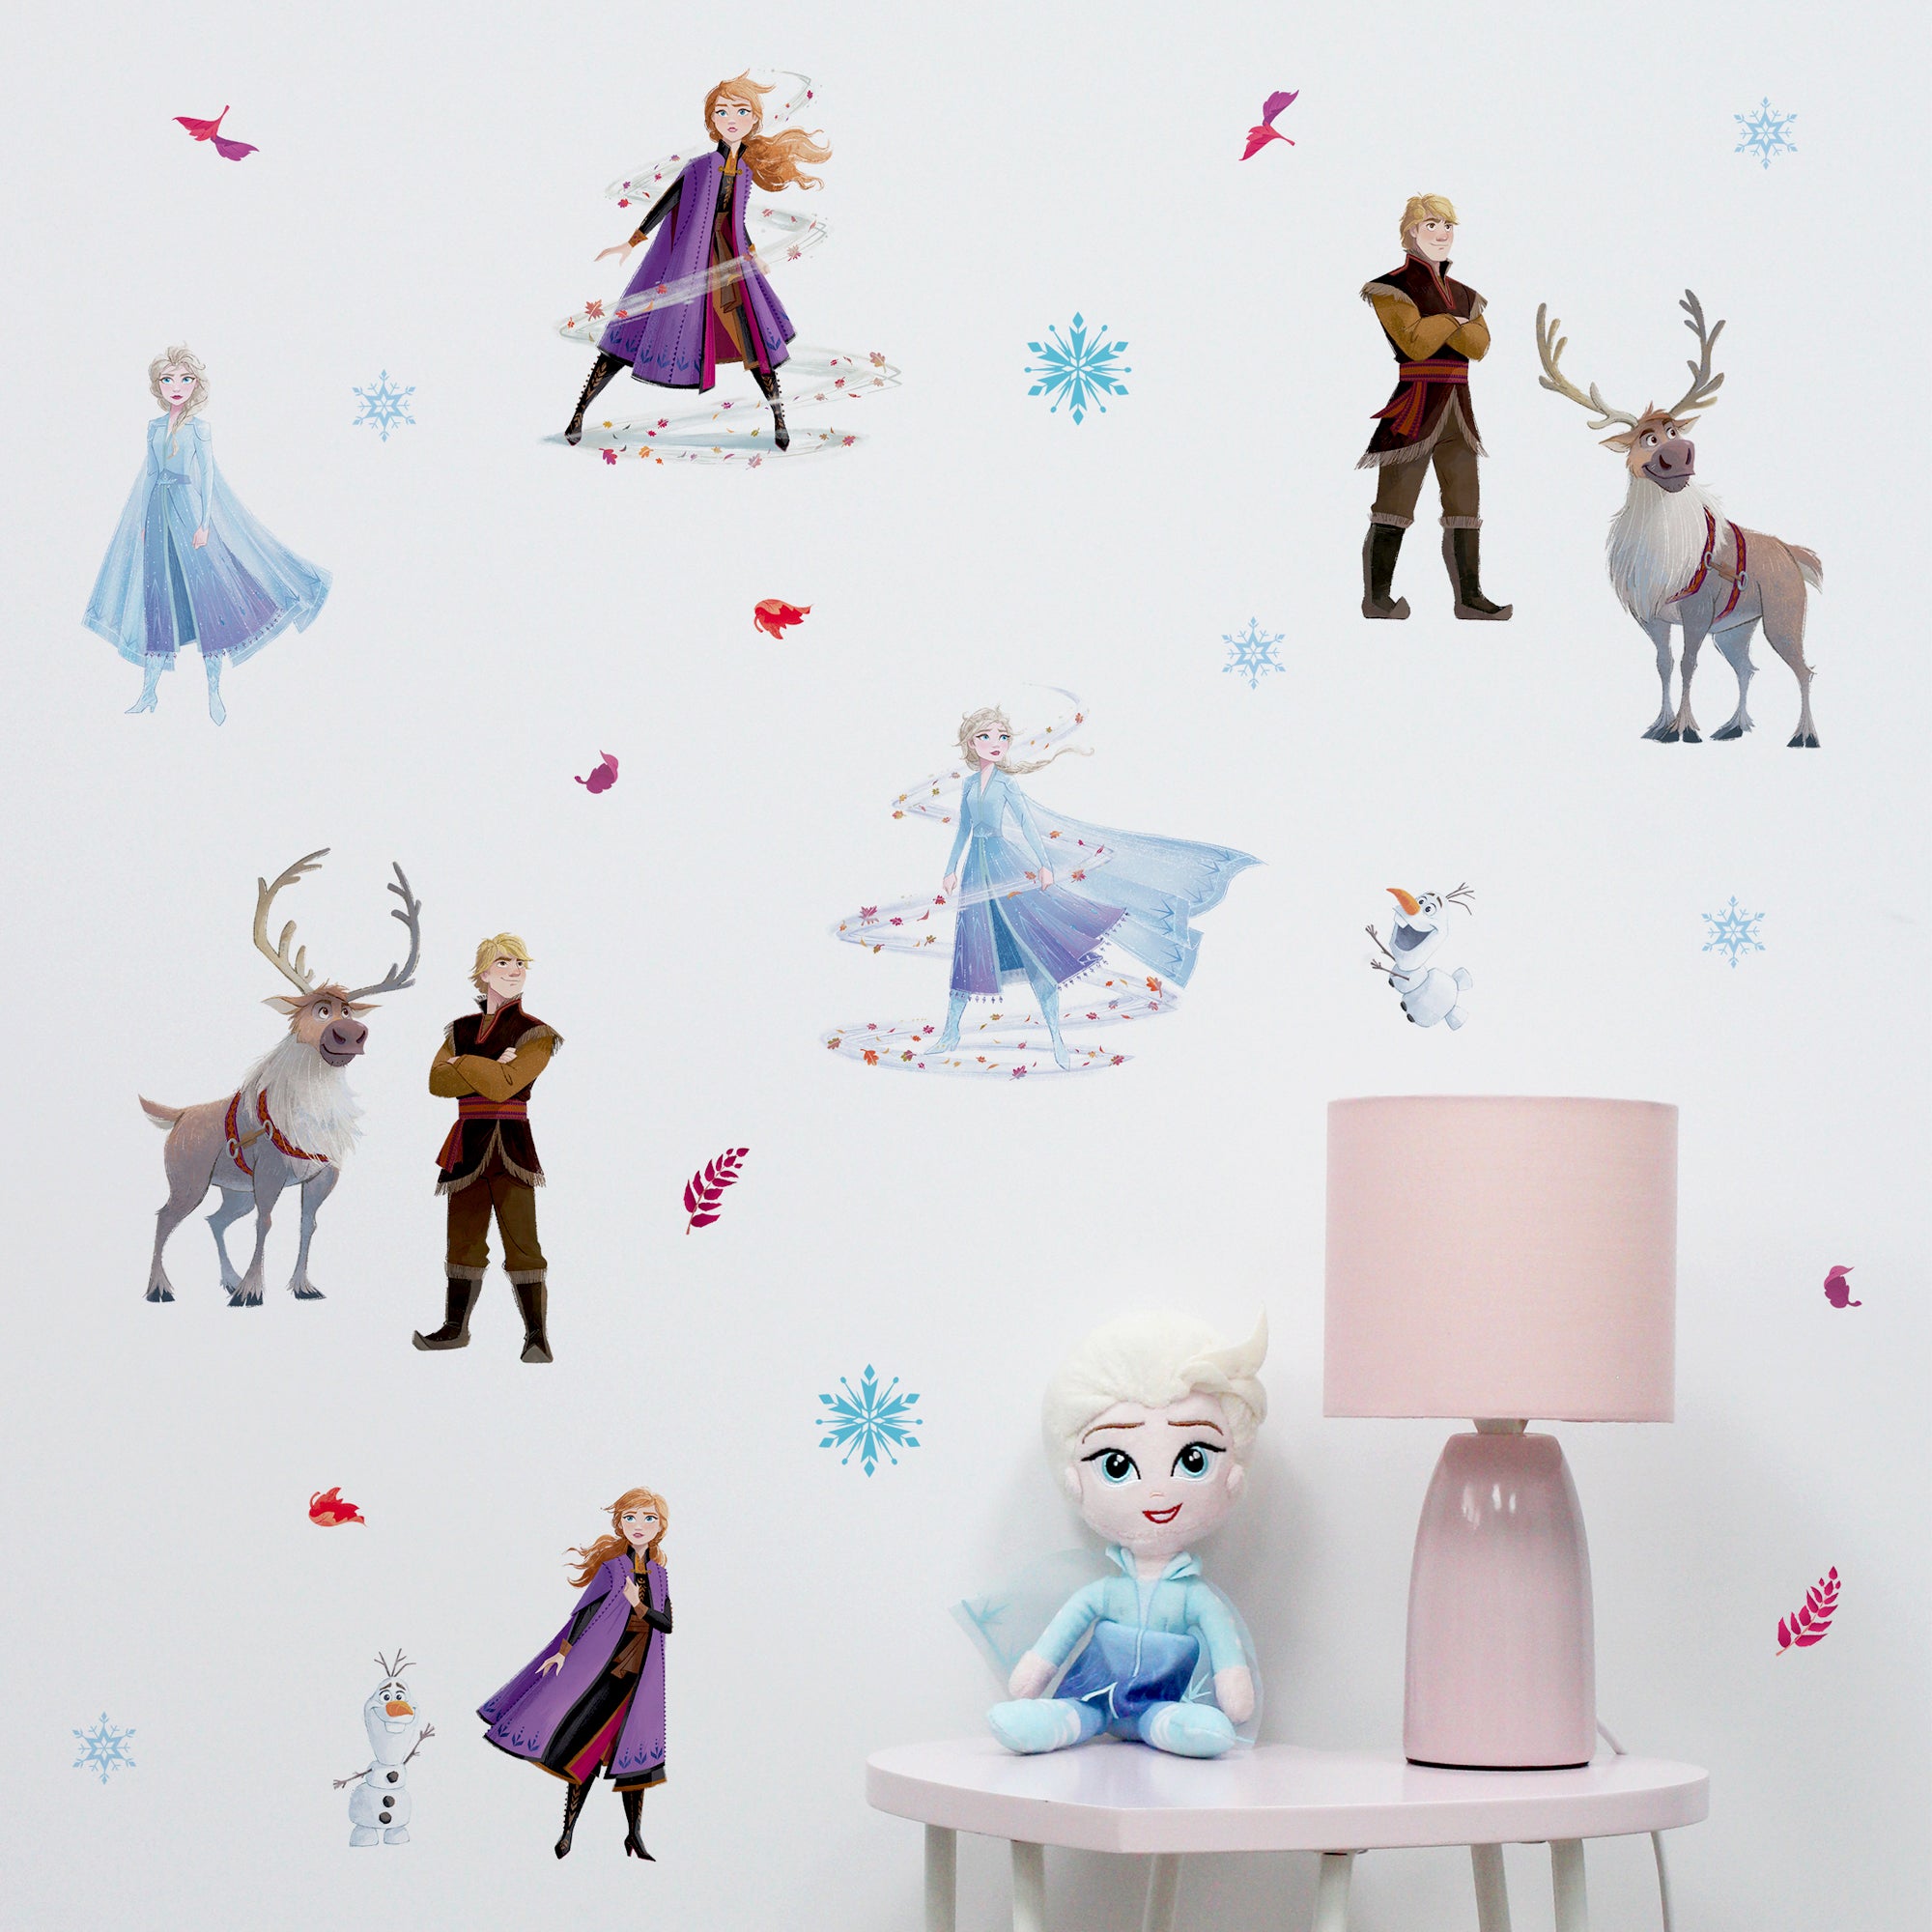 Disney Frozen Wall Stickers